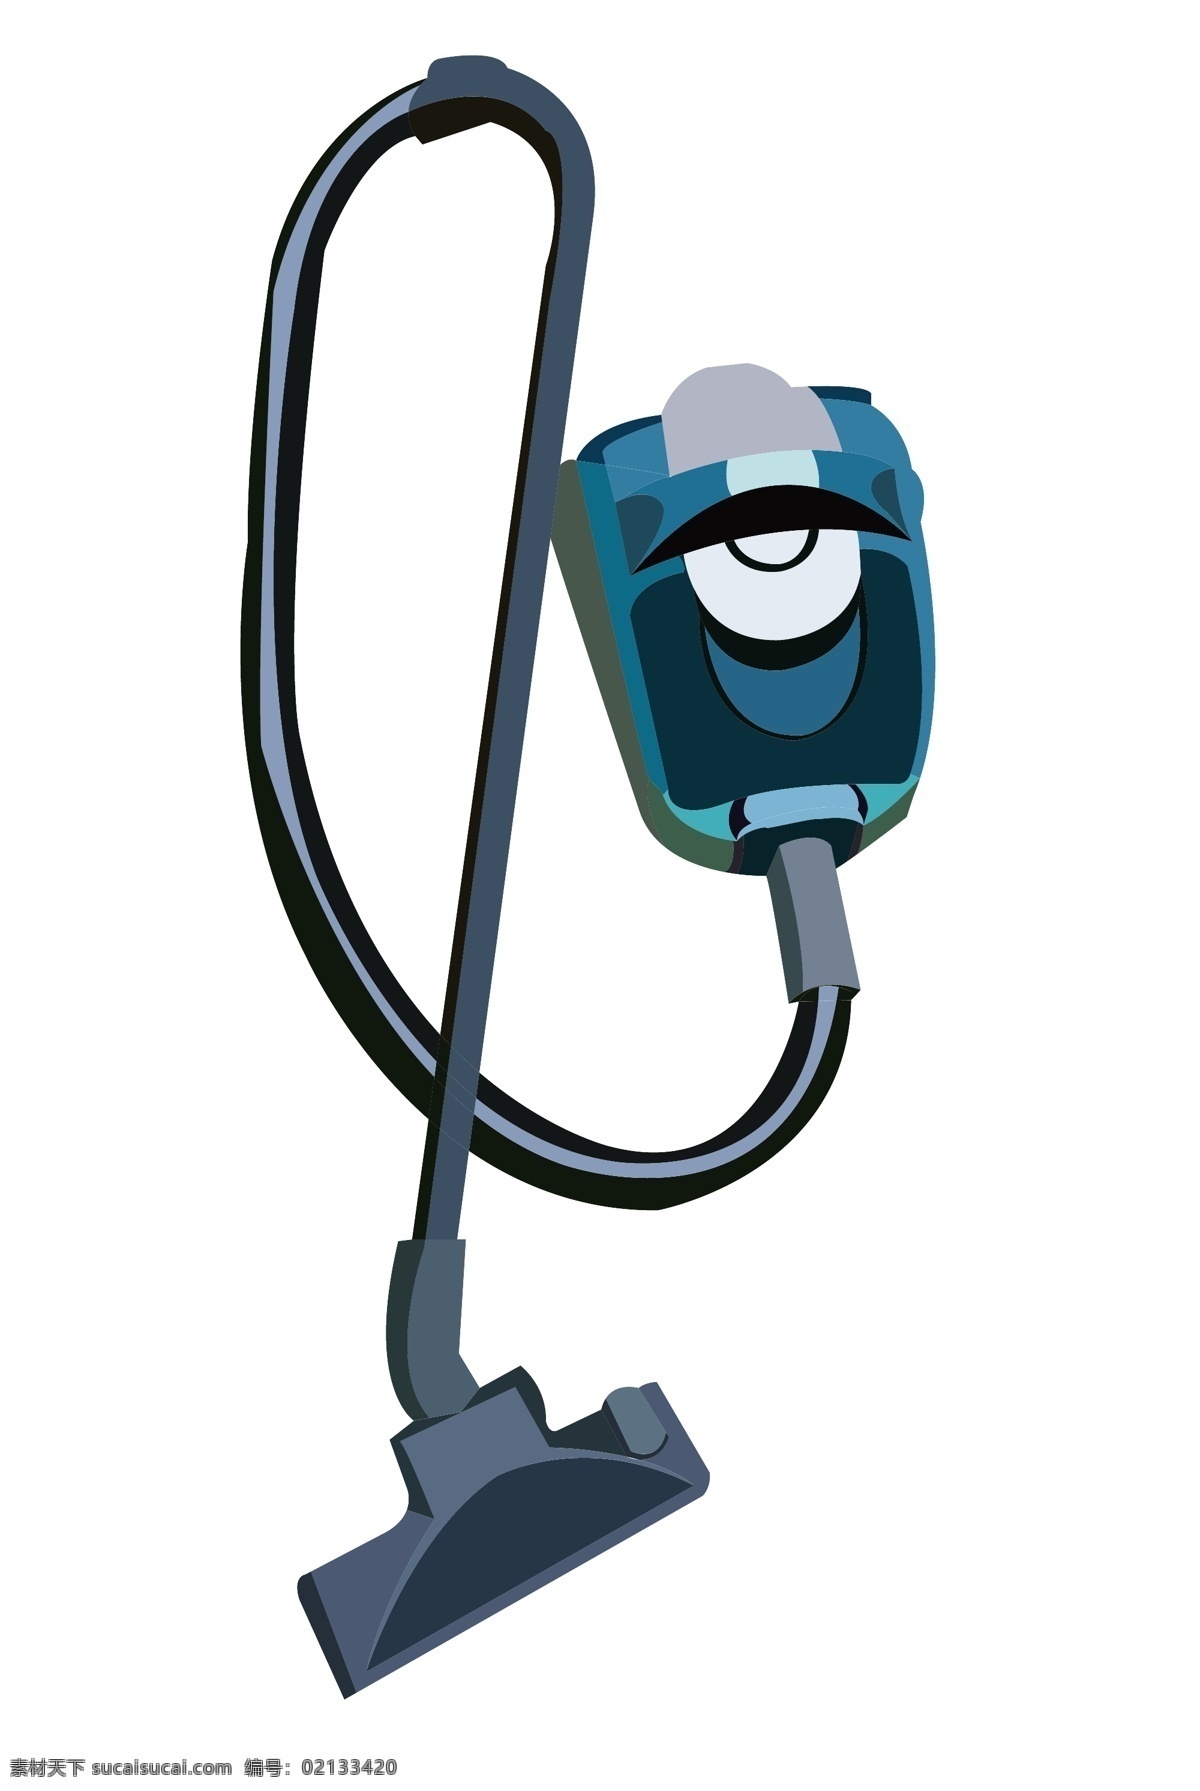 台 家用 吸尘器 插图 一台吸尘器 家电 家用电器 家电插图 家用吸尘器 蓝色吸尘器 卡通吸尘器